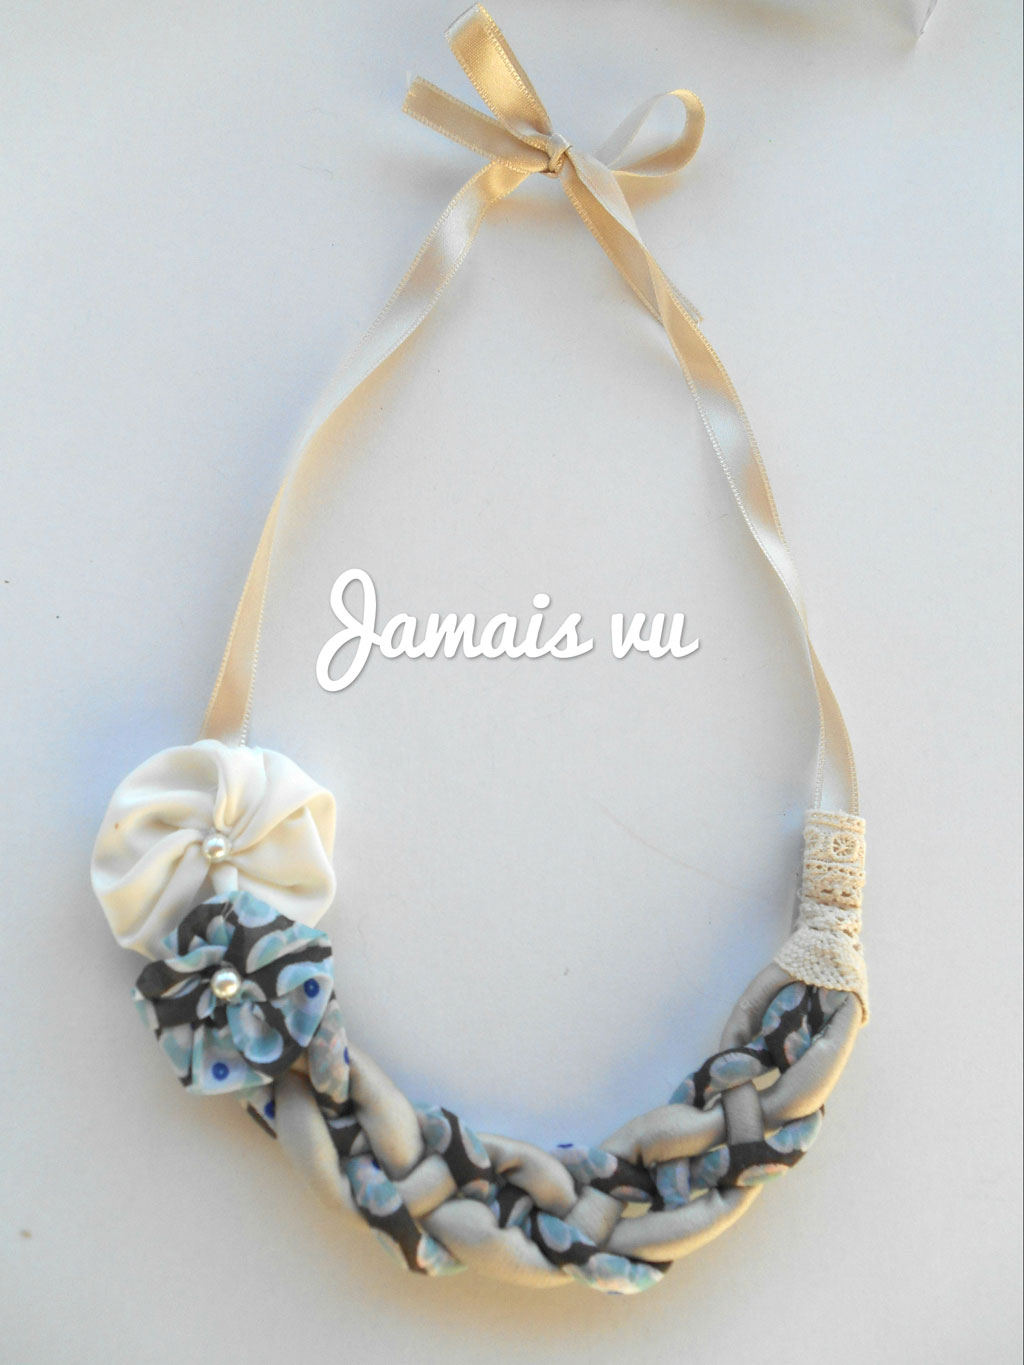 Jamails vu nakit: Šarena ogrlica od tkanine